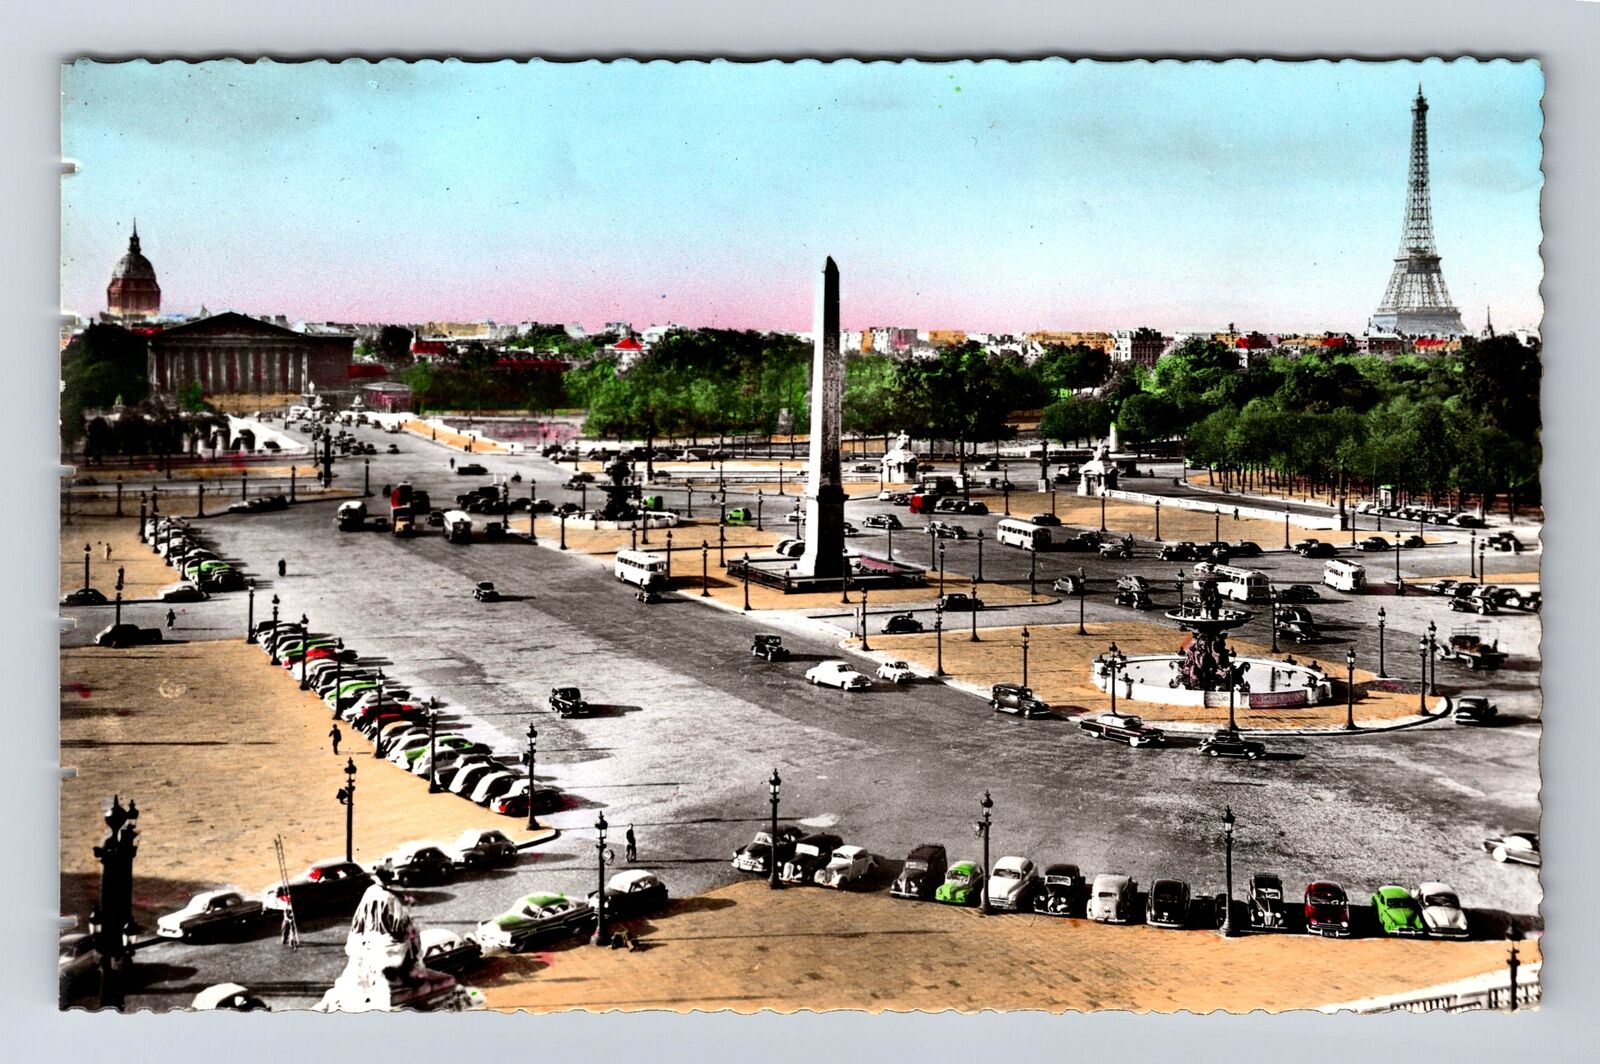 Paris-France, One of Famous Public Square, Eiffel Tower, Vintage Card Postcard